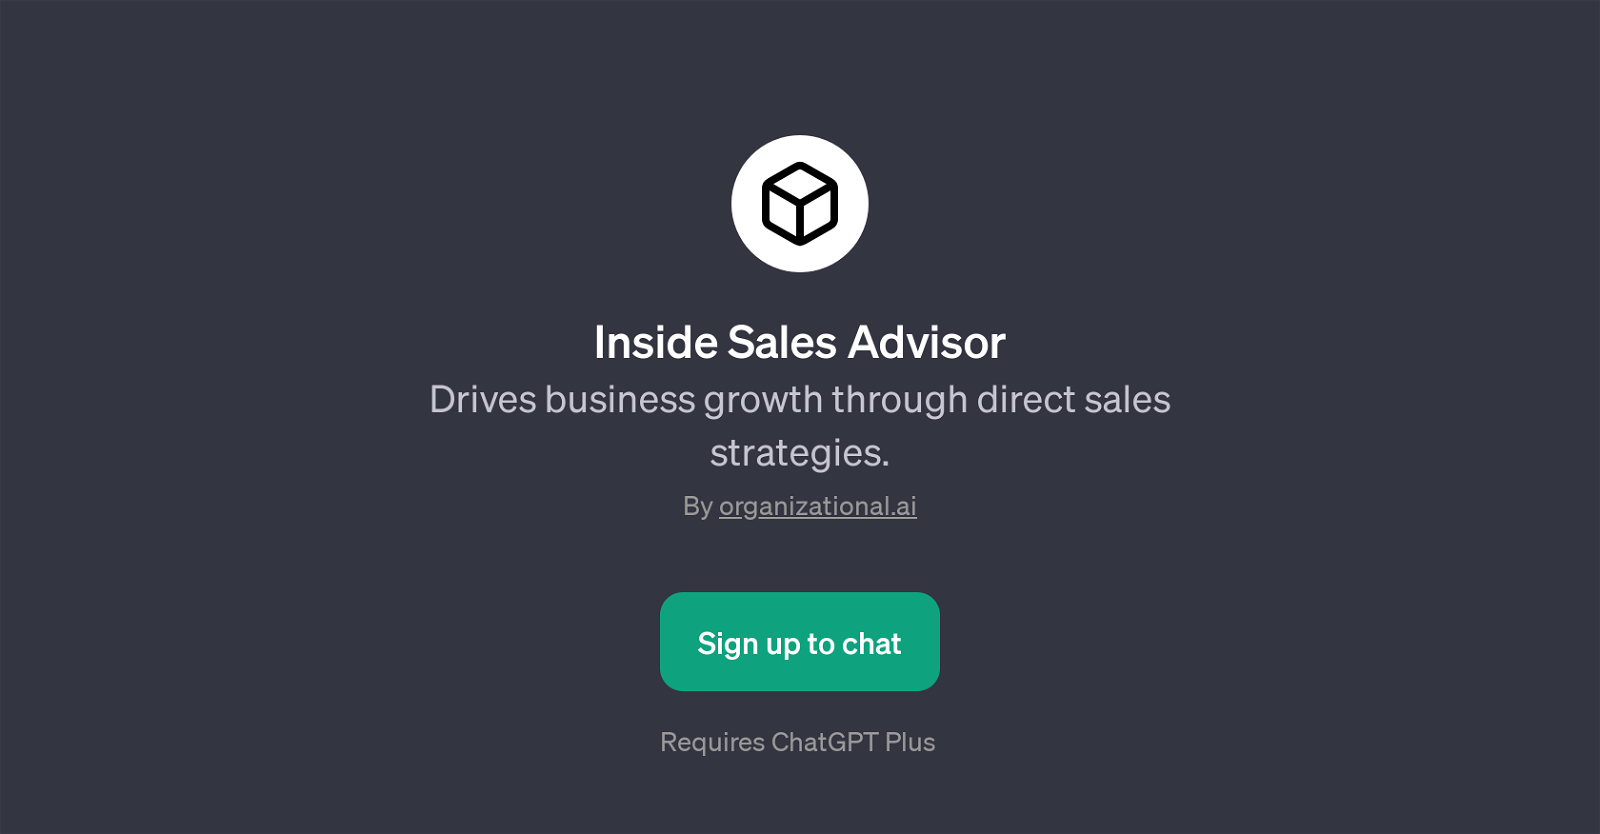 Inside Sales Advisor website